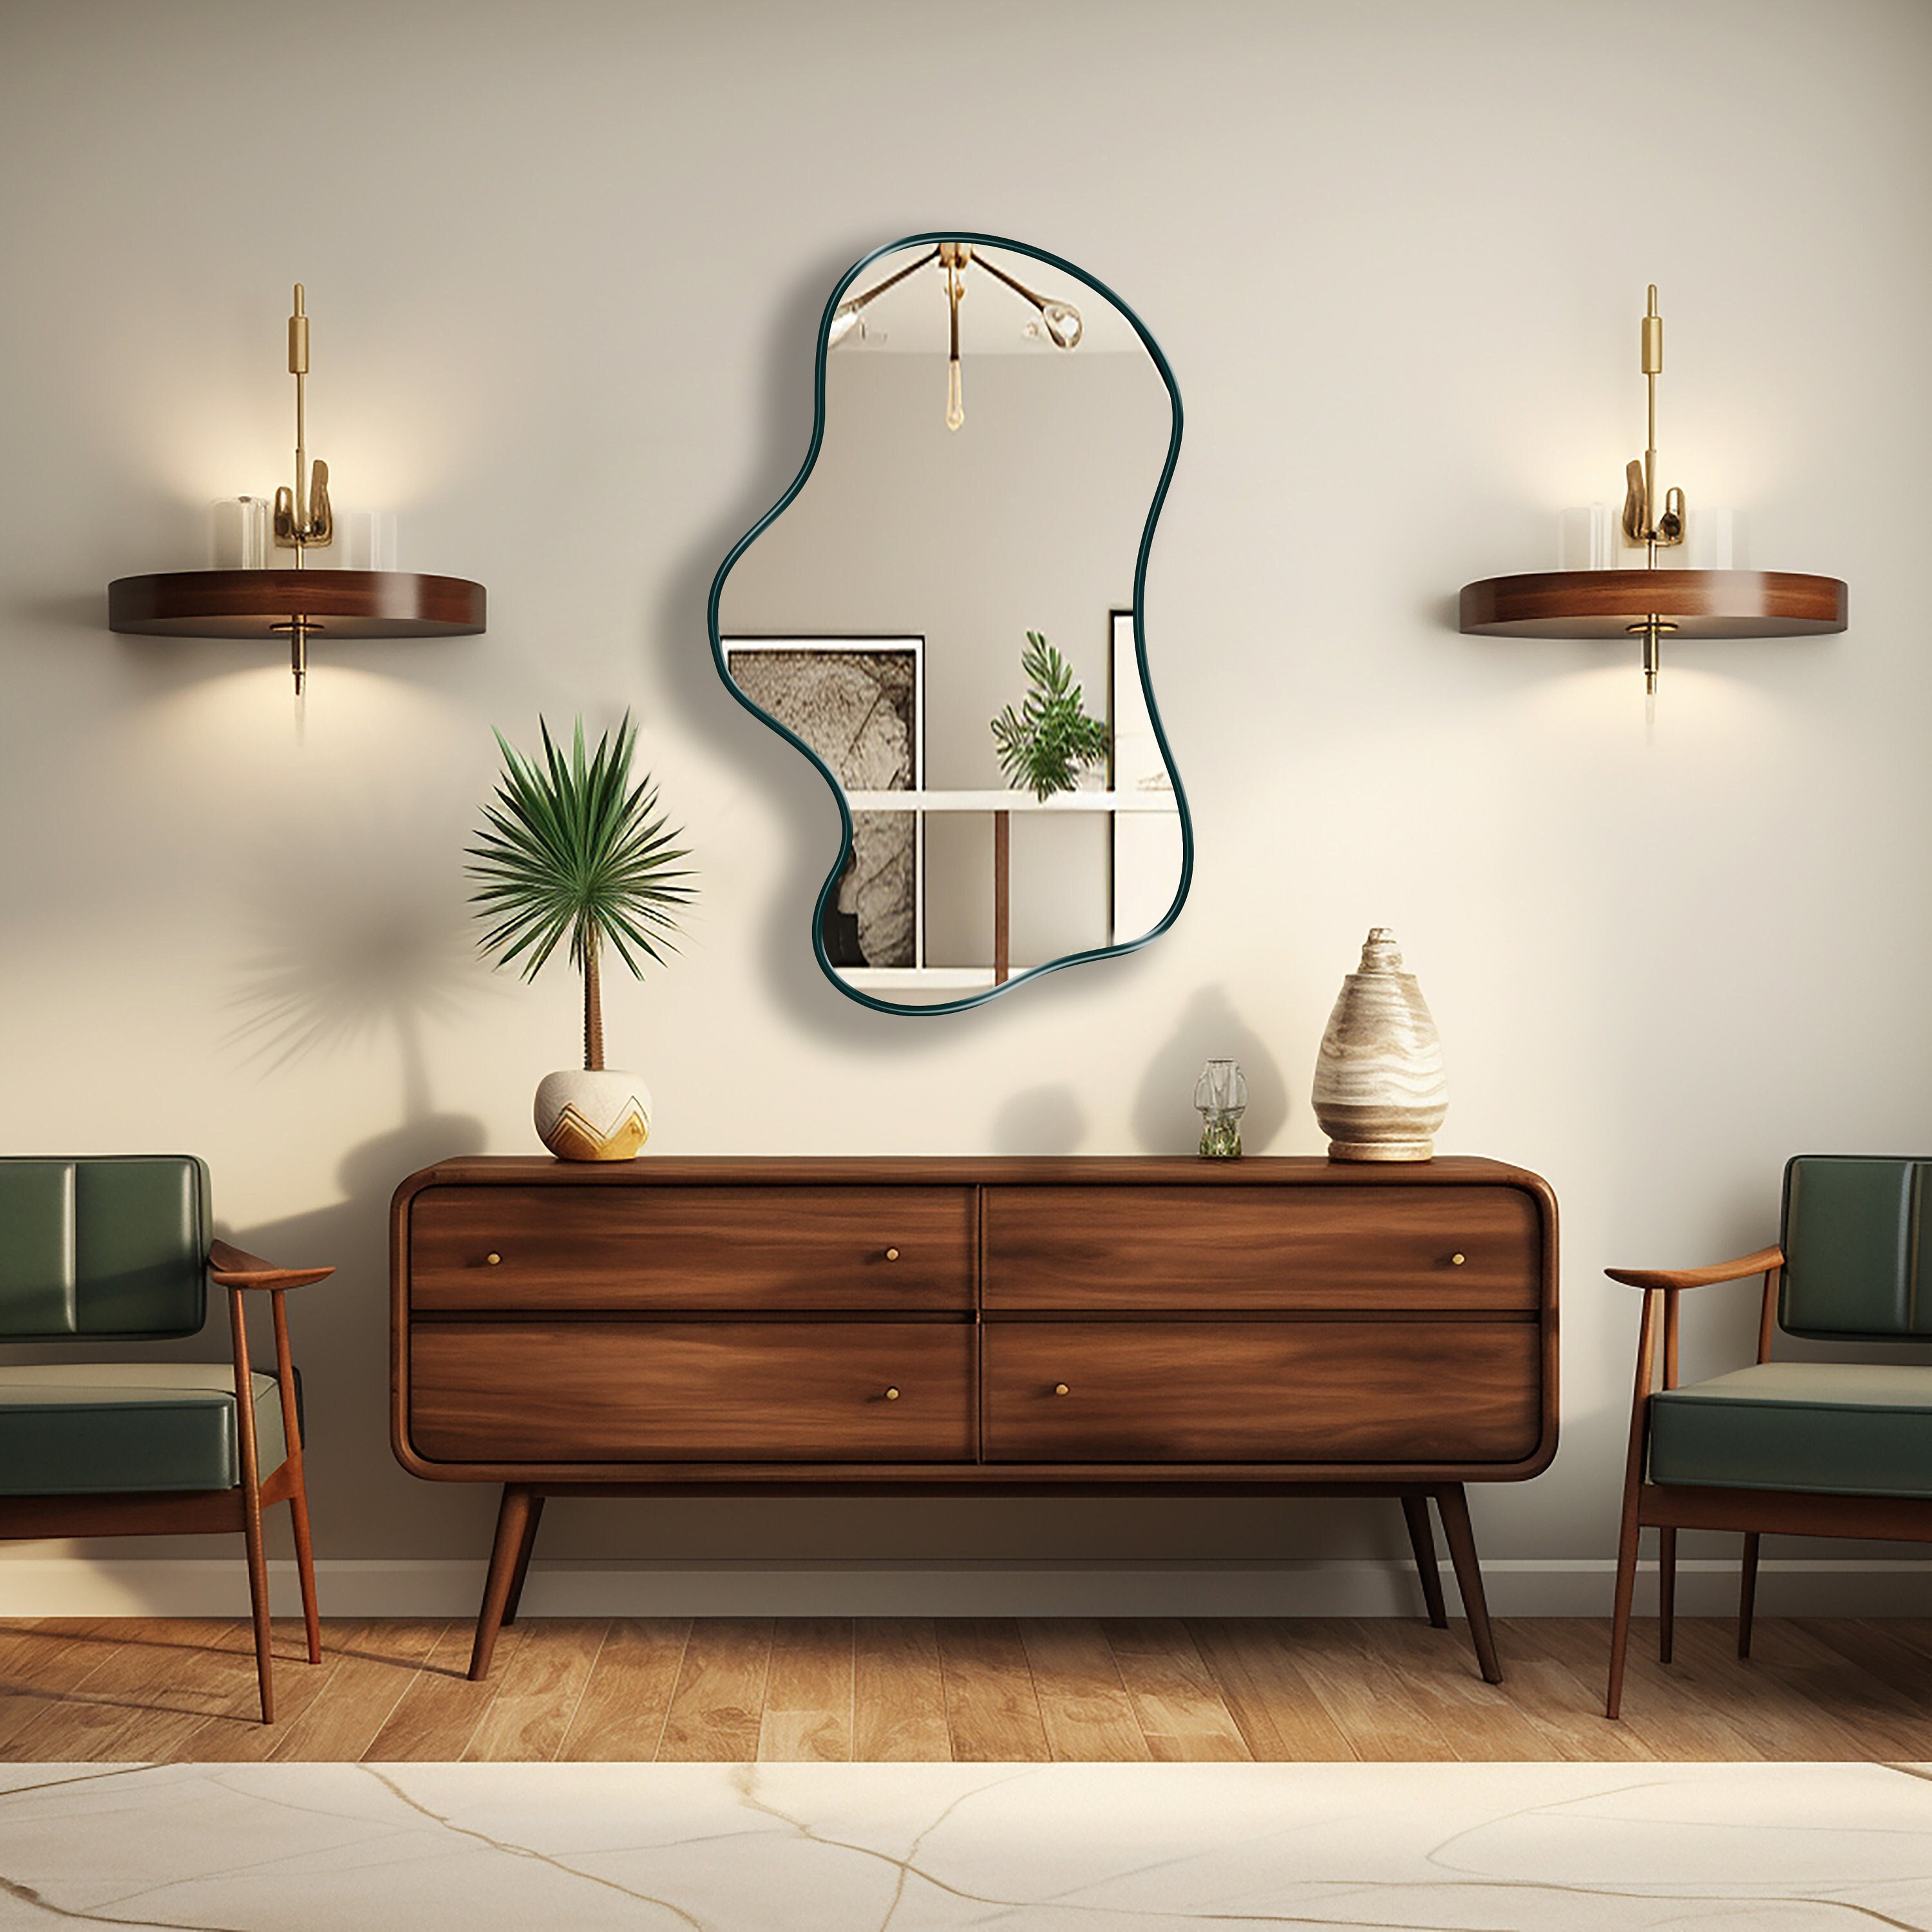 Asymmetrical Mirror, Wavy Mirror, Irregular Shaped Mirror Wall Decor